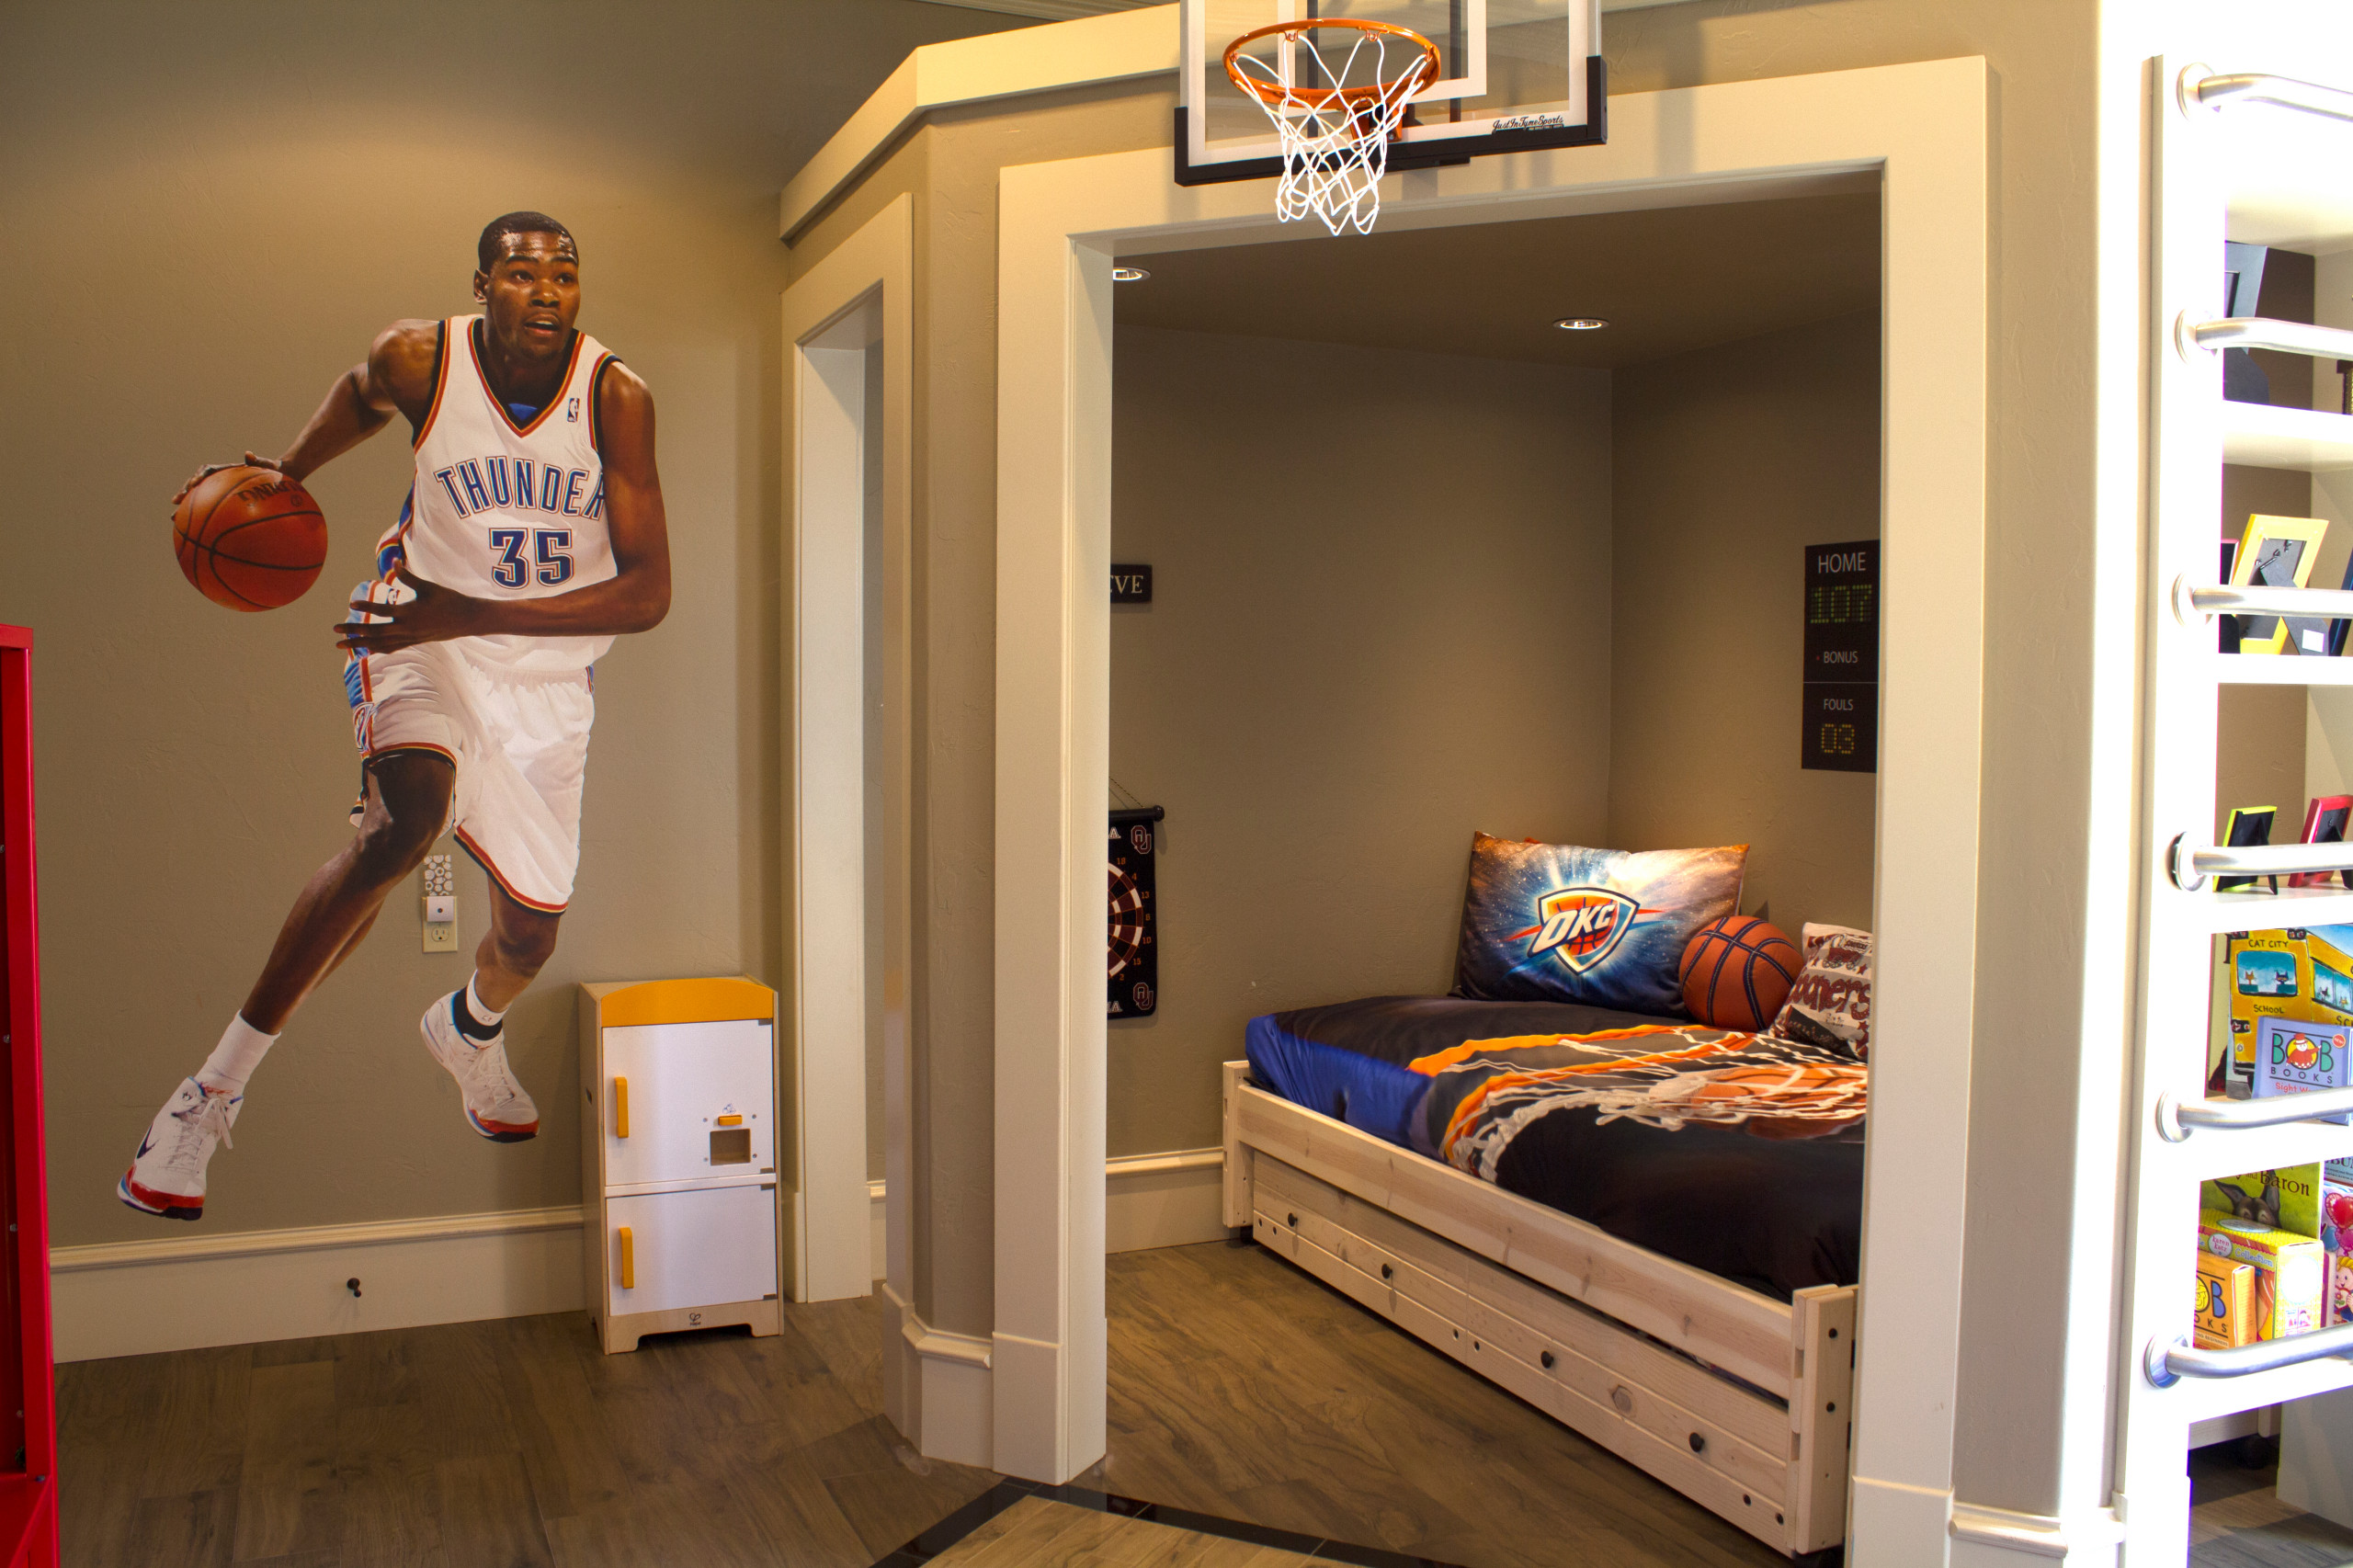 Boys Basketball Themed Room - Photos & Ideas | Houzz